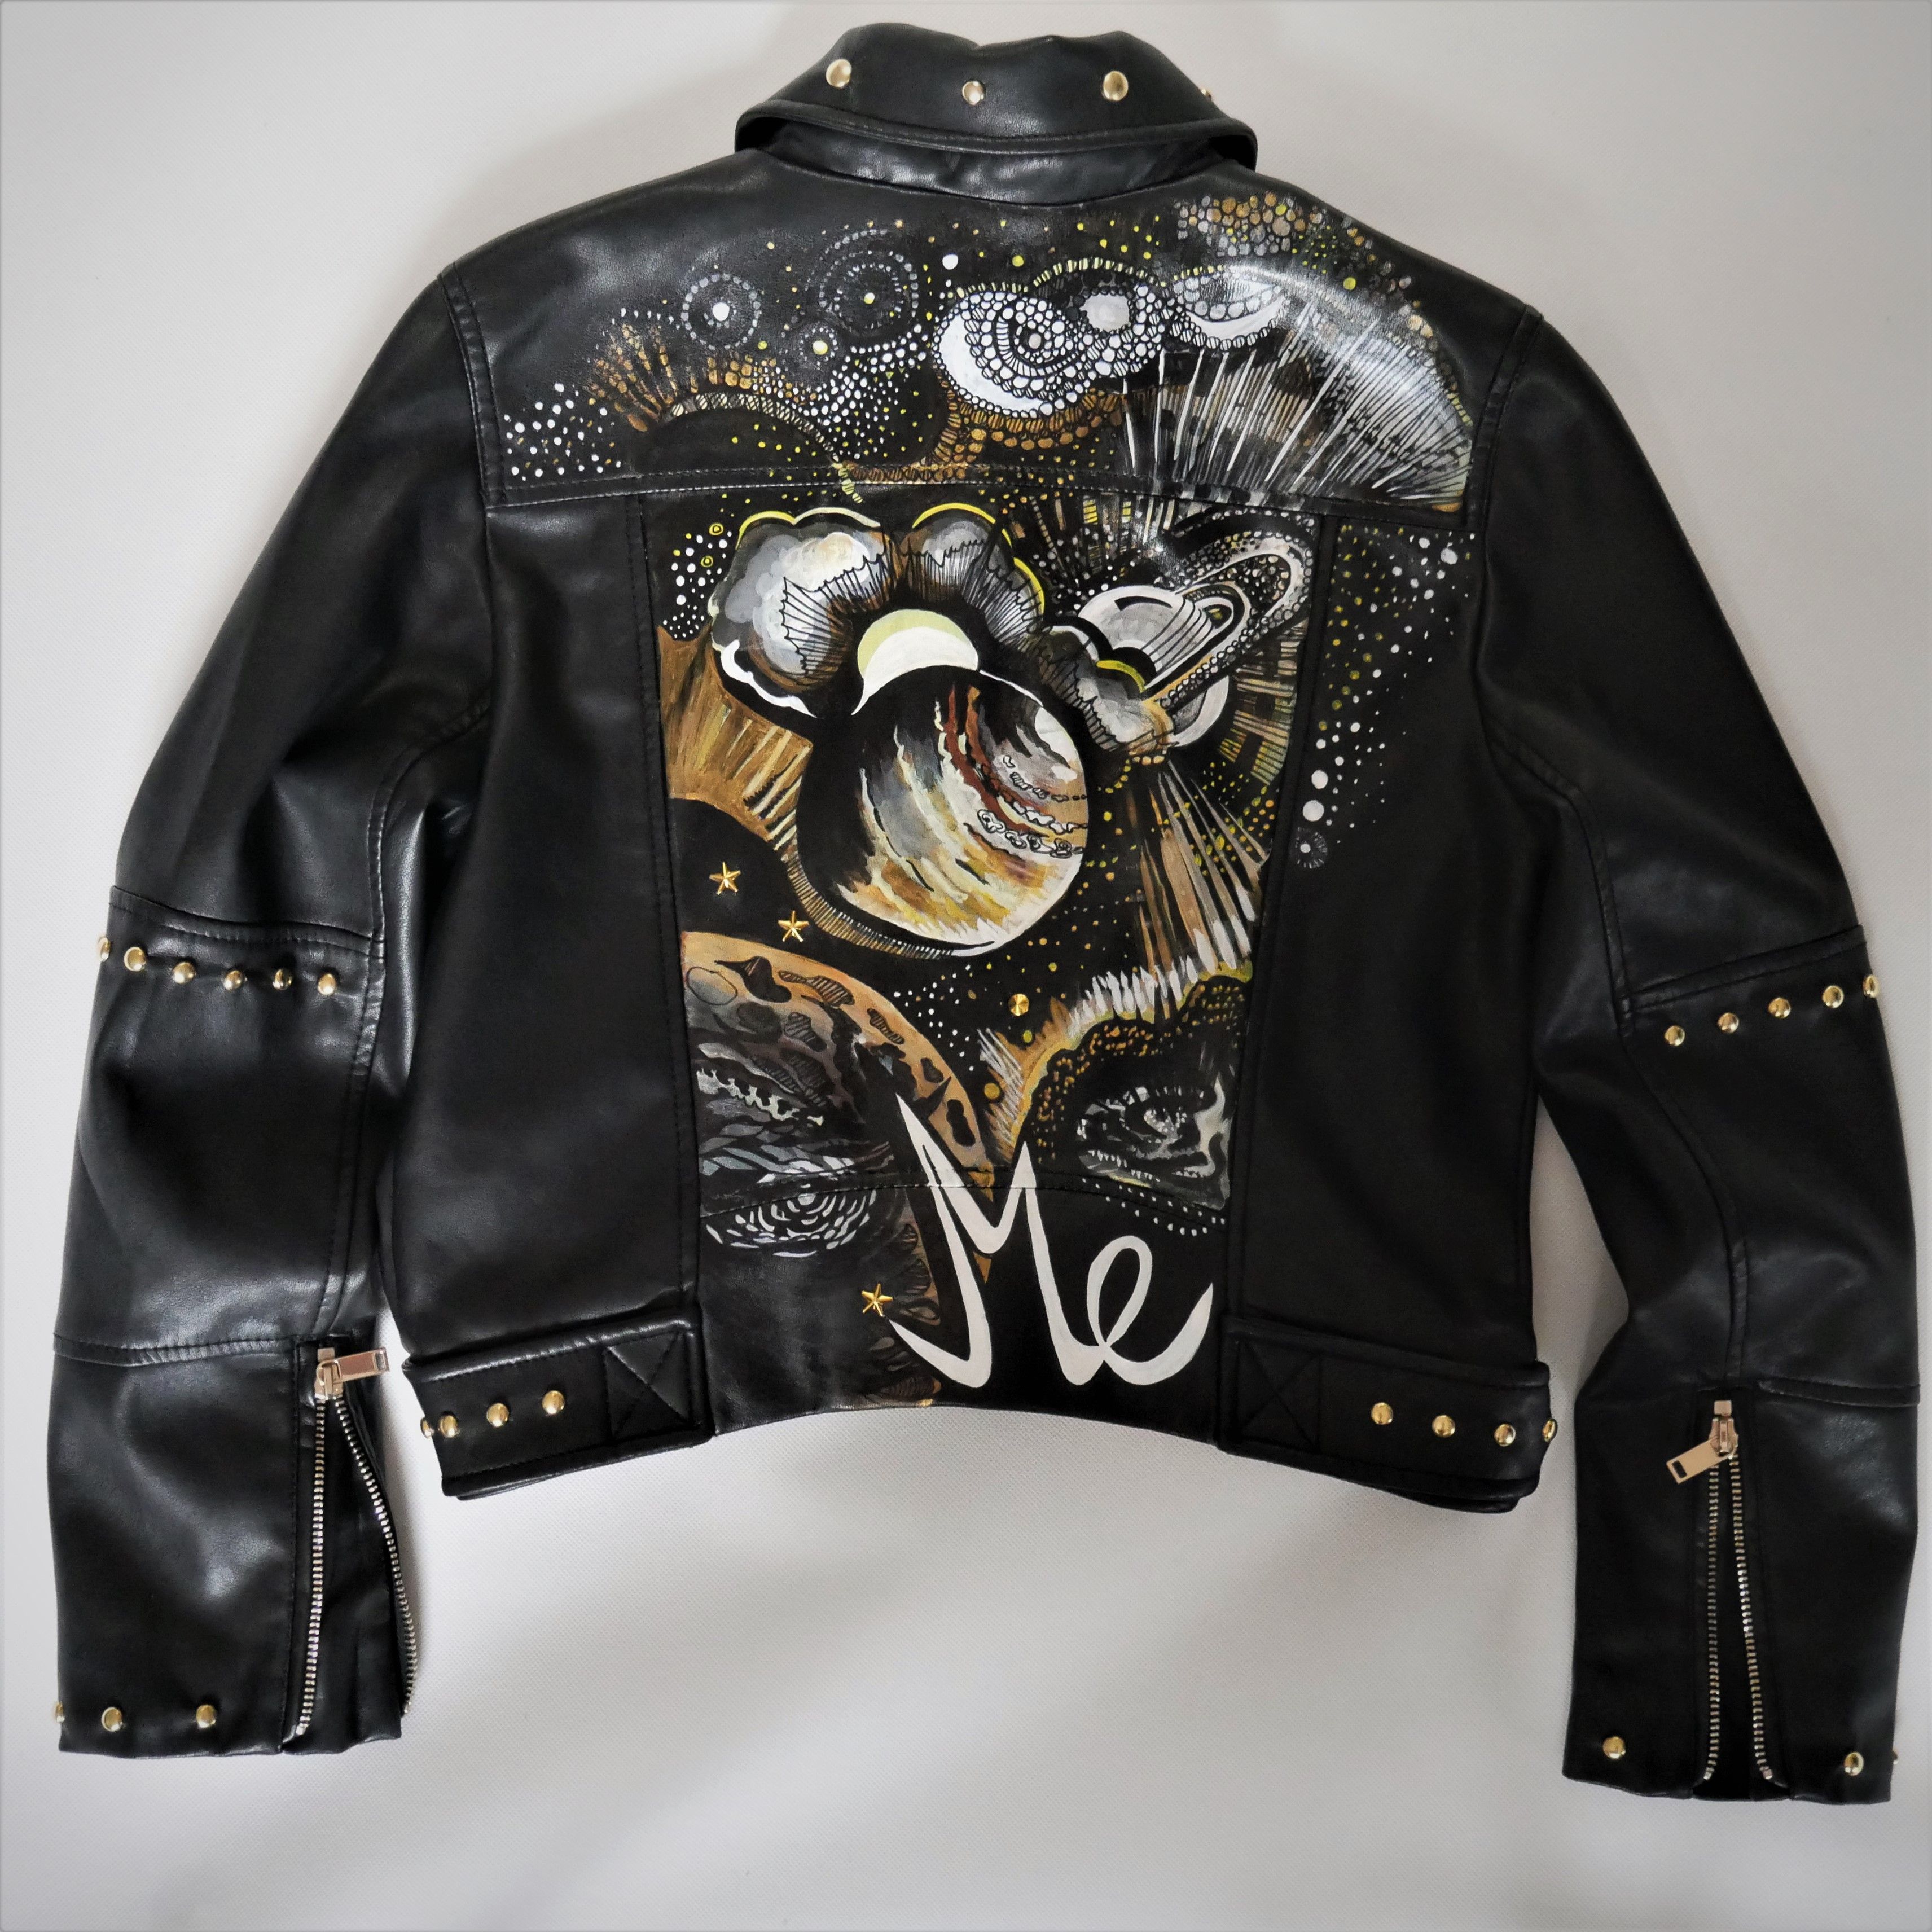 hand-painted jacket, custom jacket, custom leather jacket, biker jacket,